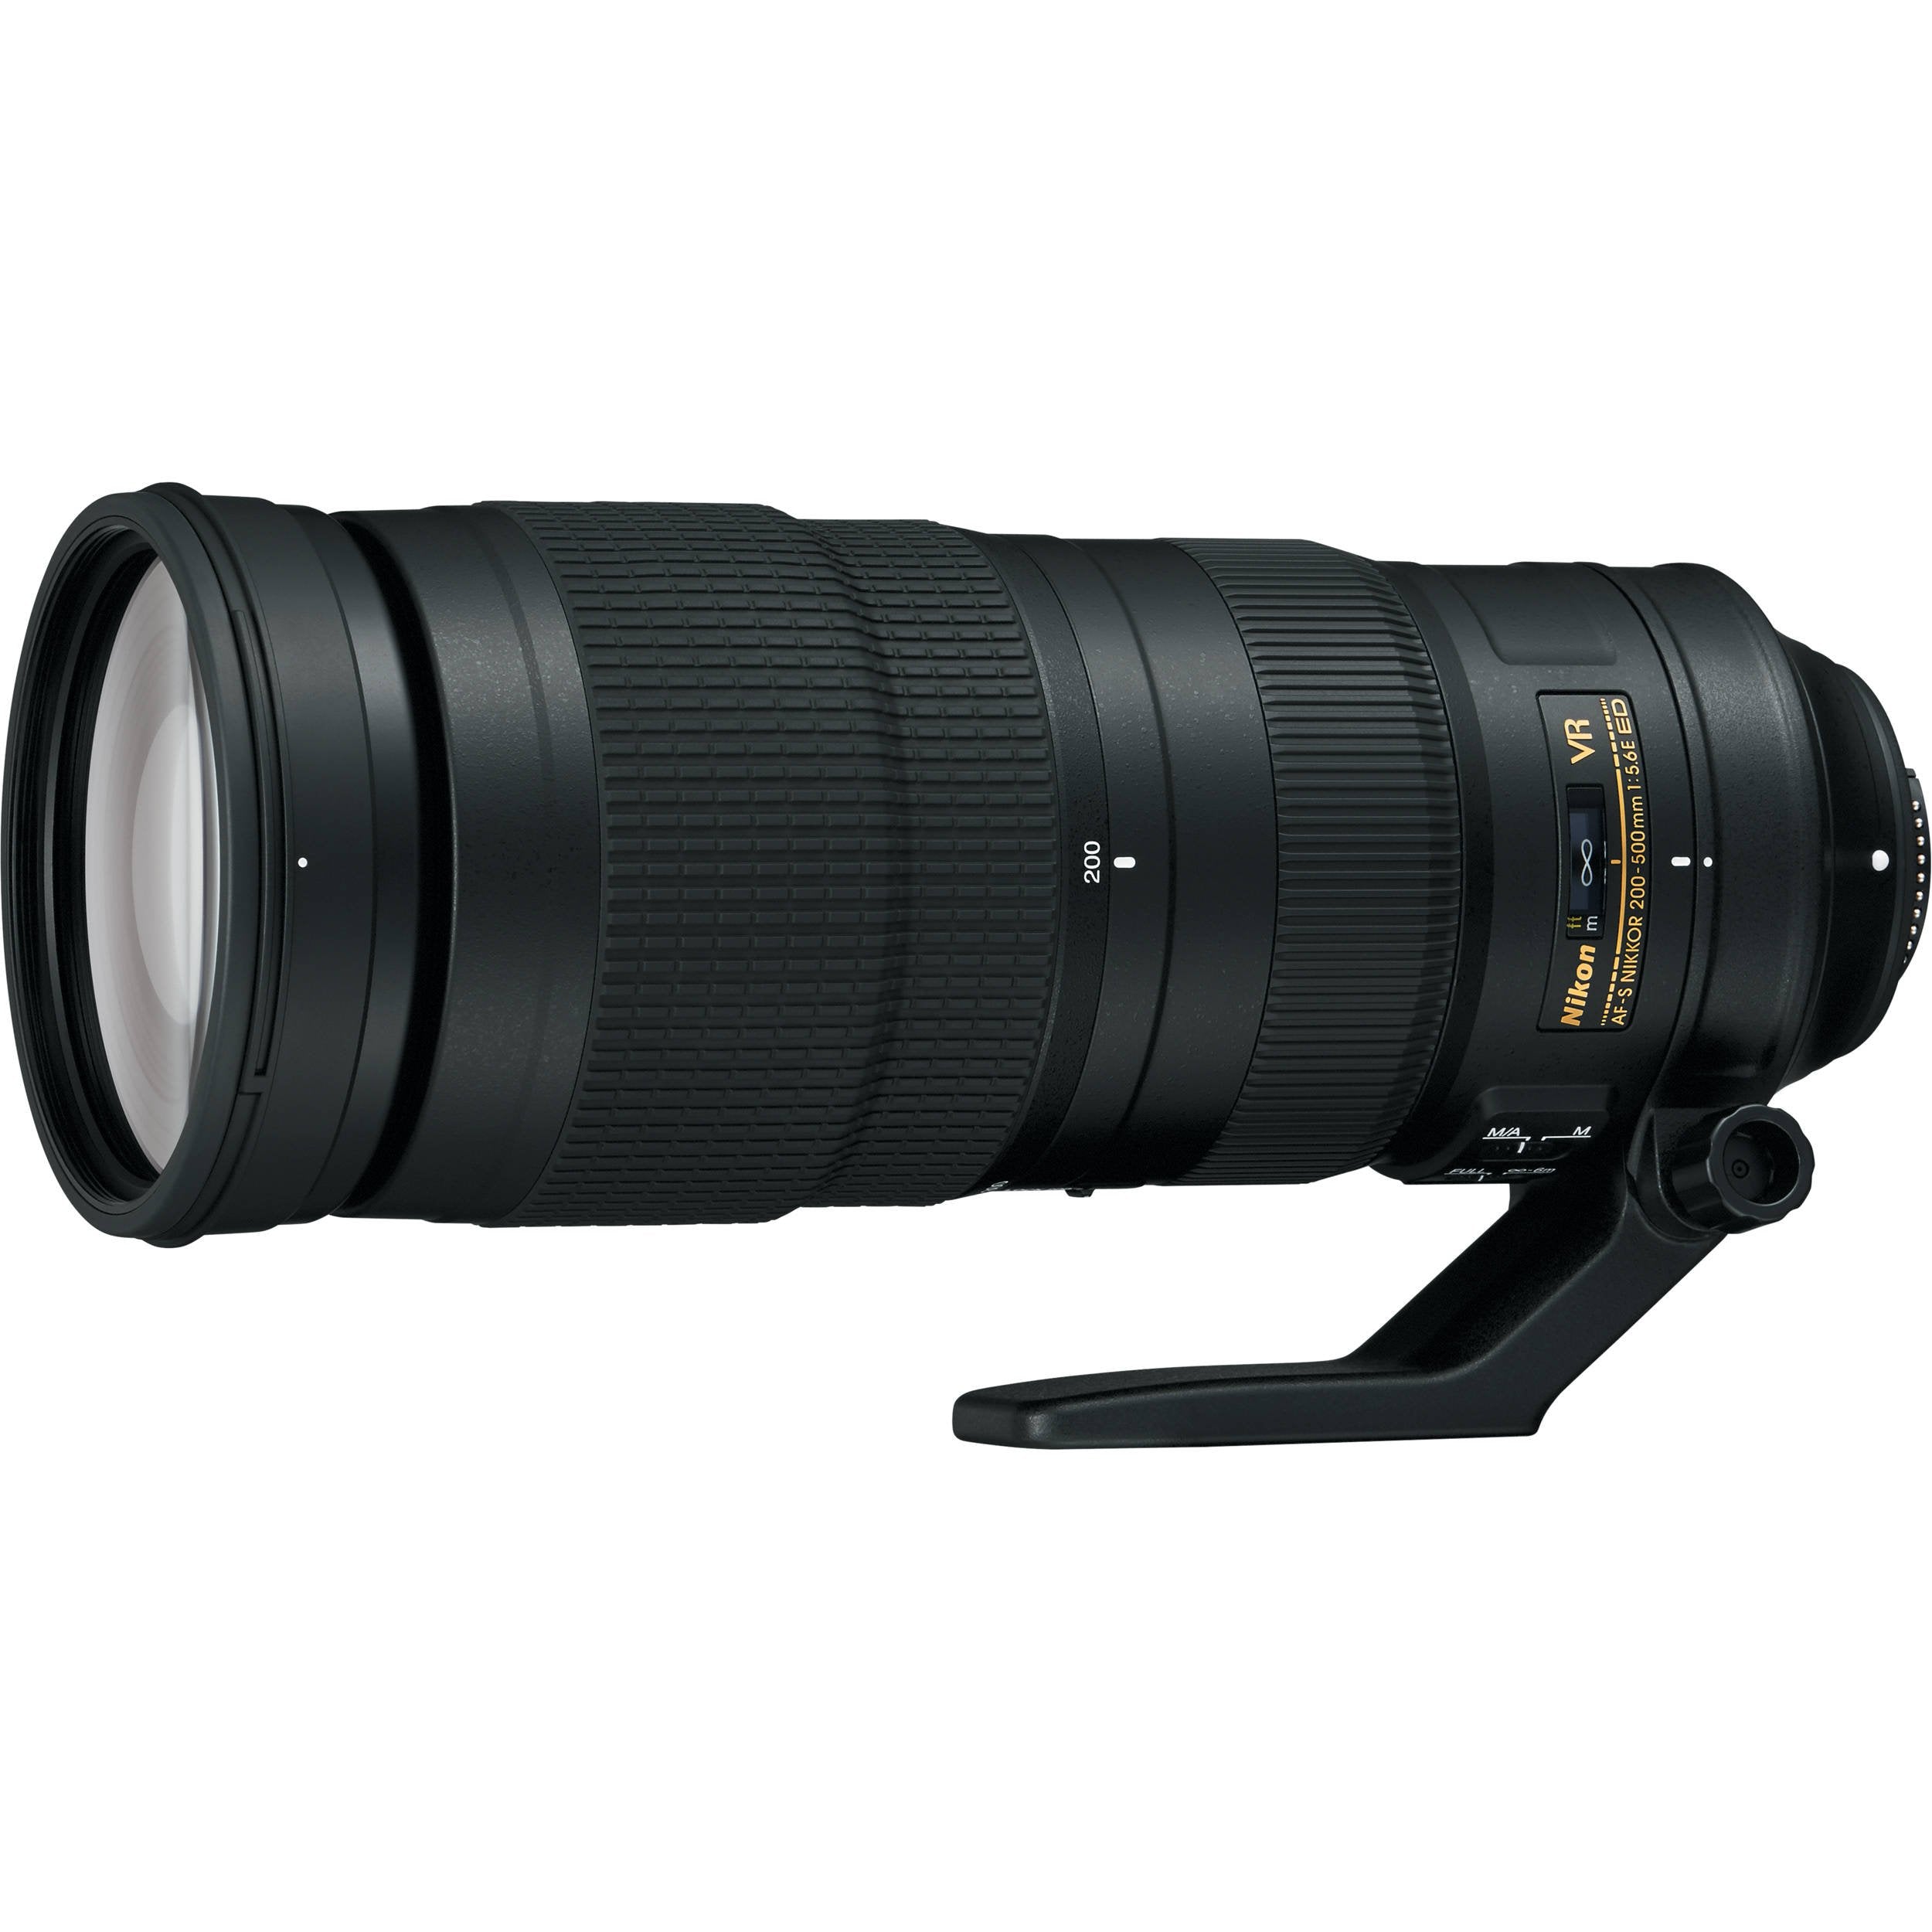 Nikon AF-S NIKKOR 200-500mm f/5.6E ED VR Camera Lens (Intl Model) + UV Filter Kit + Cleaning Kit